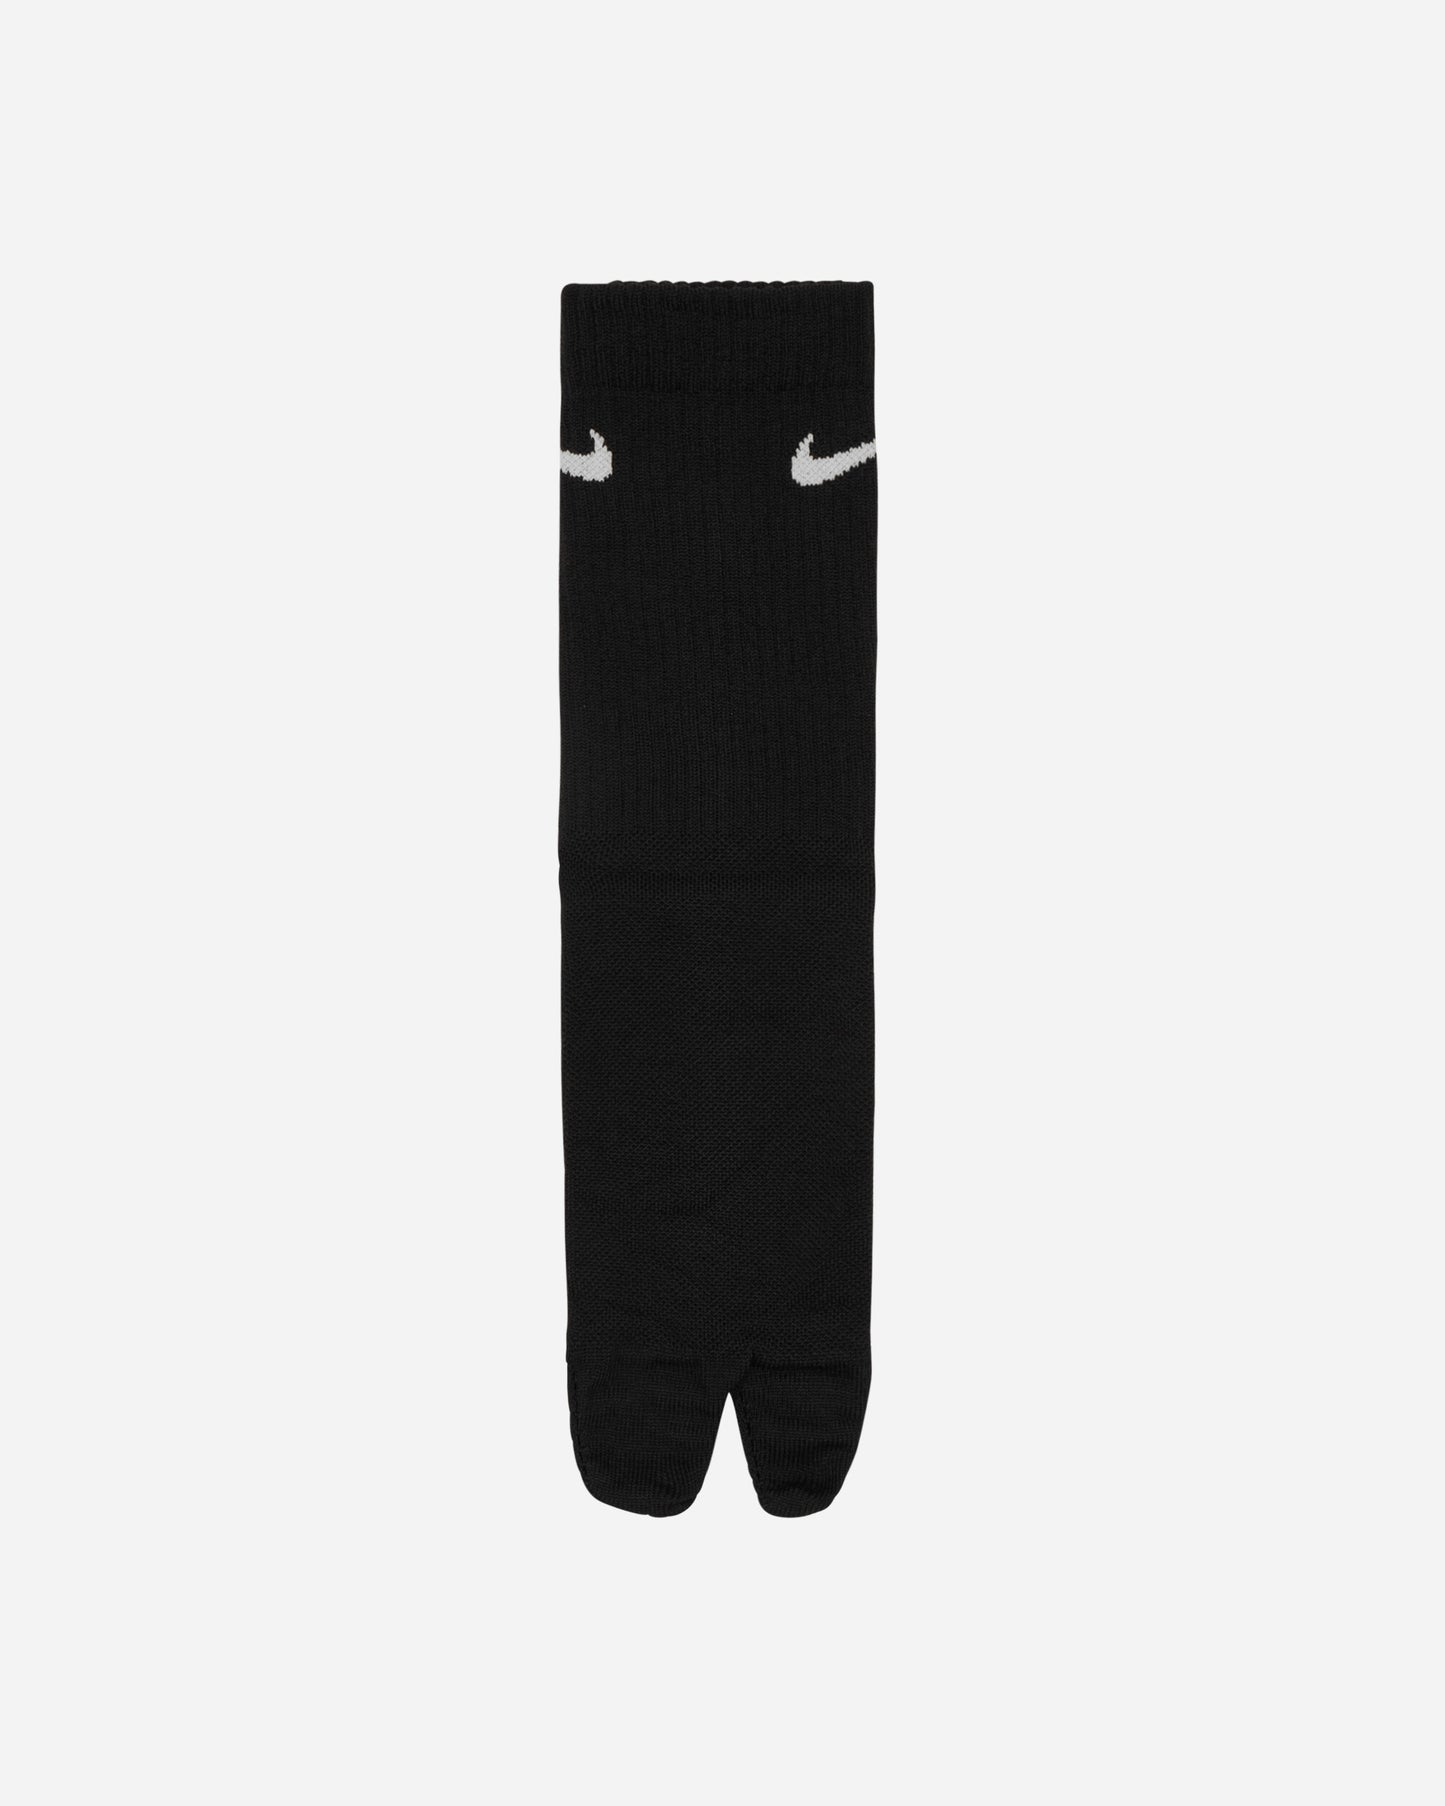 Nike U Nk Ed  Pls Ltwt Crw 160 Tab Black/White Underwear Socks DX1158-010